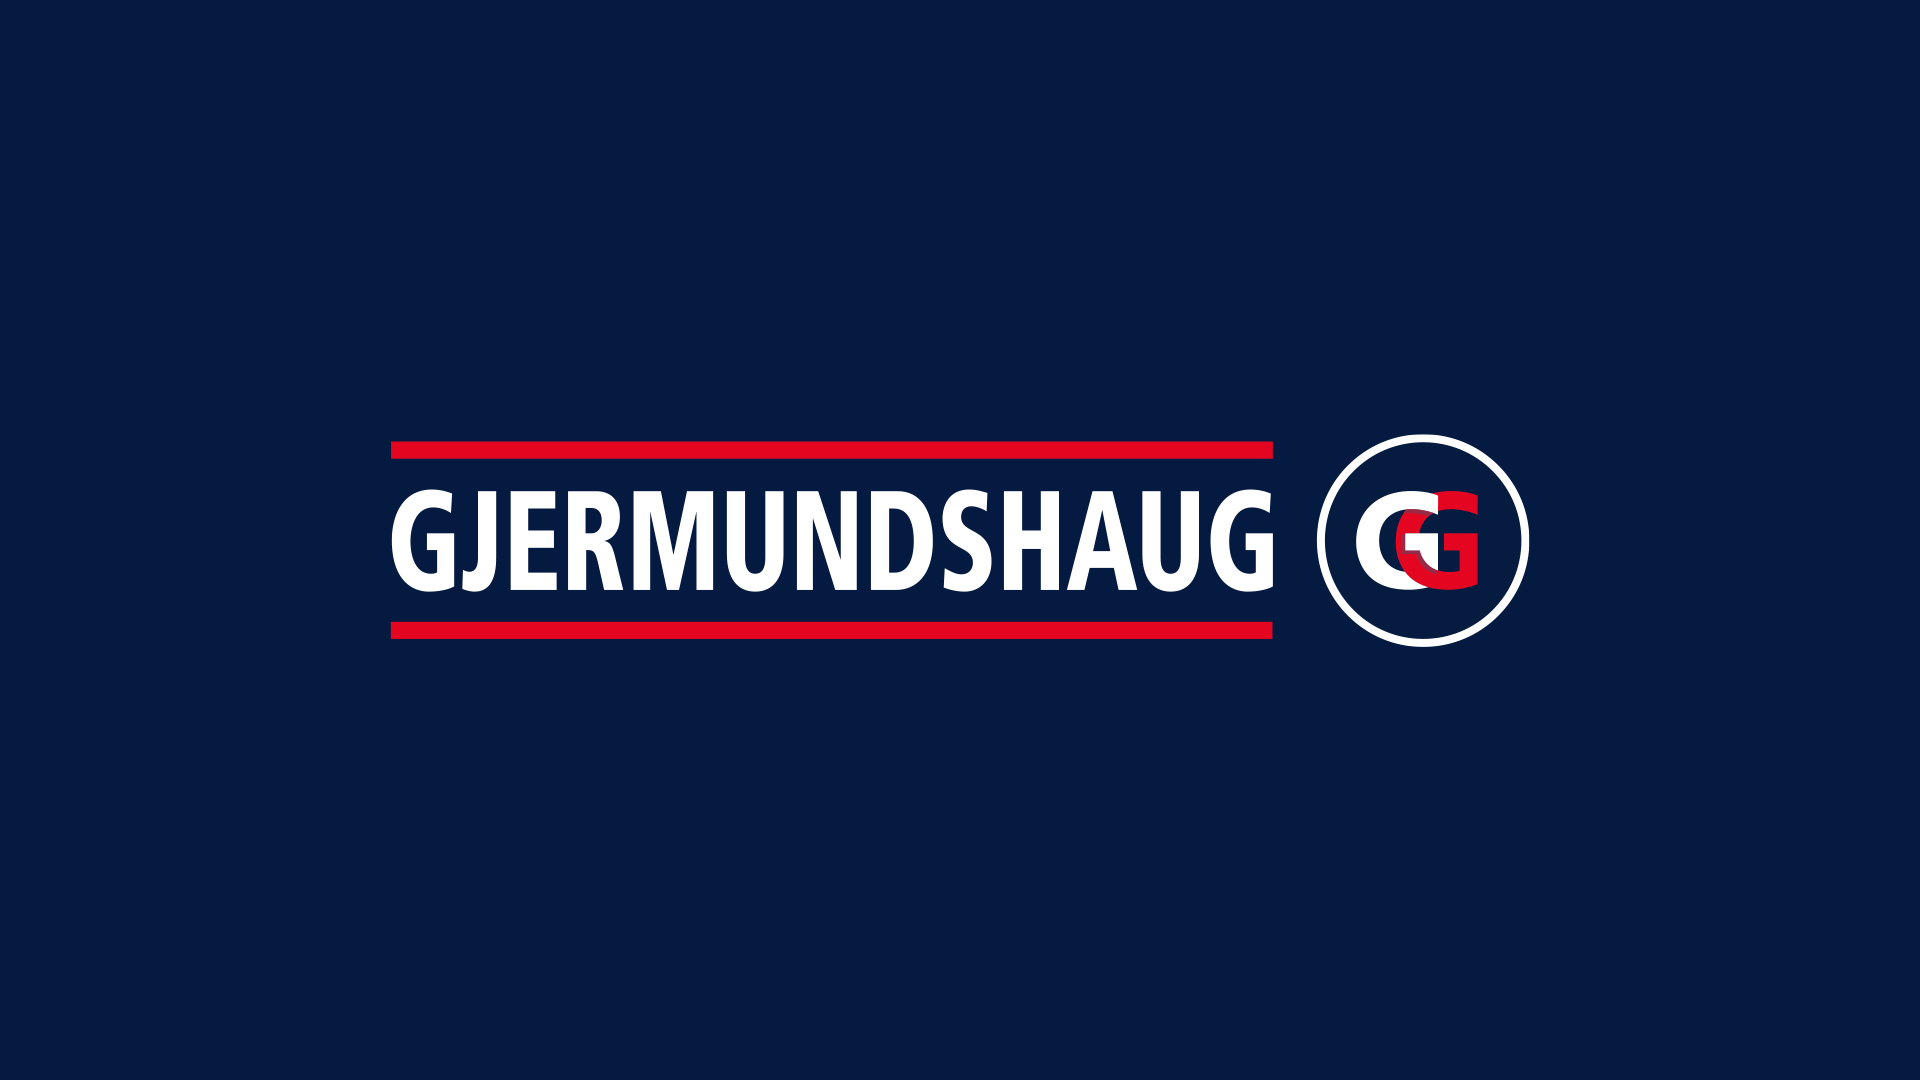 Gjermundshaug Gruppen logo